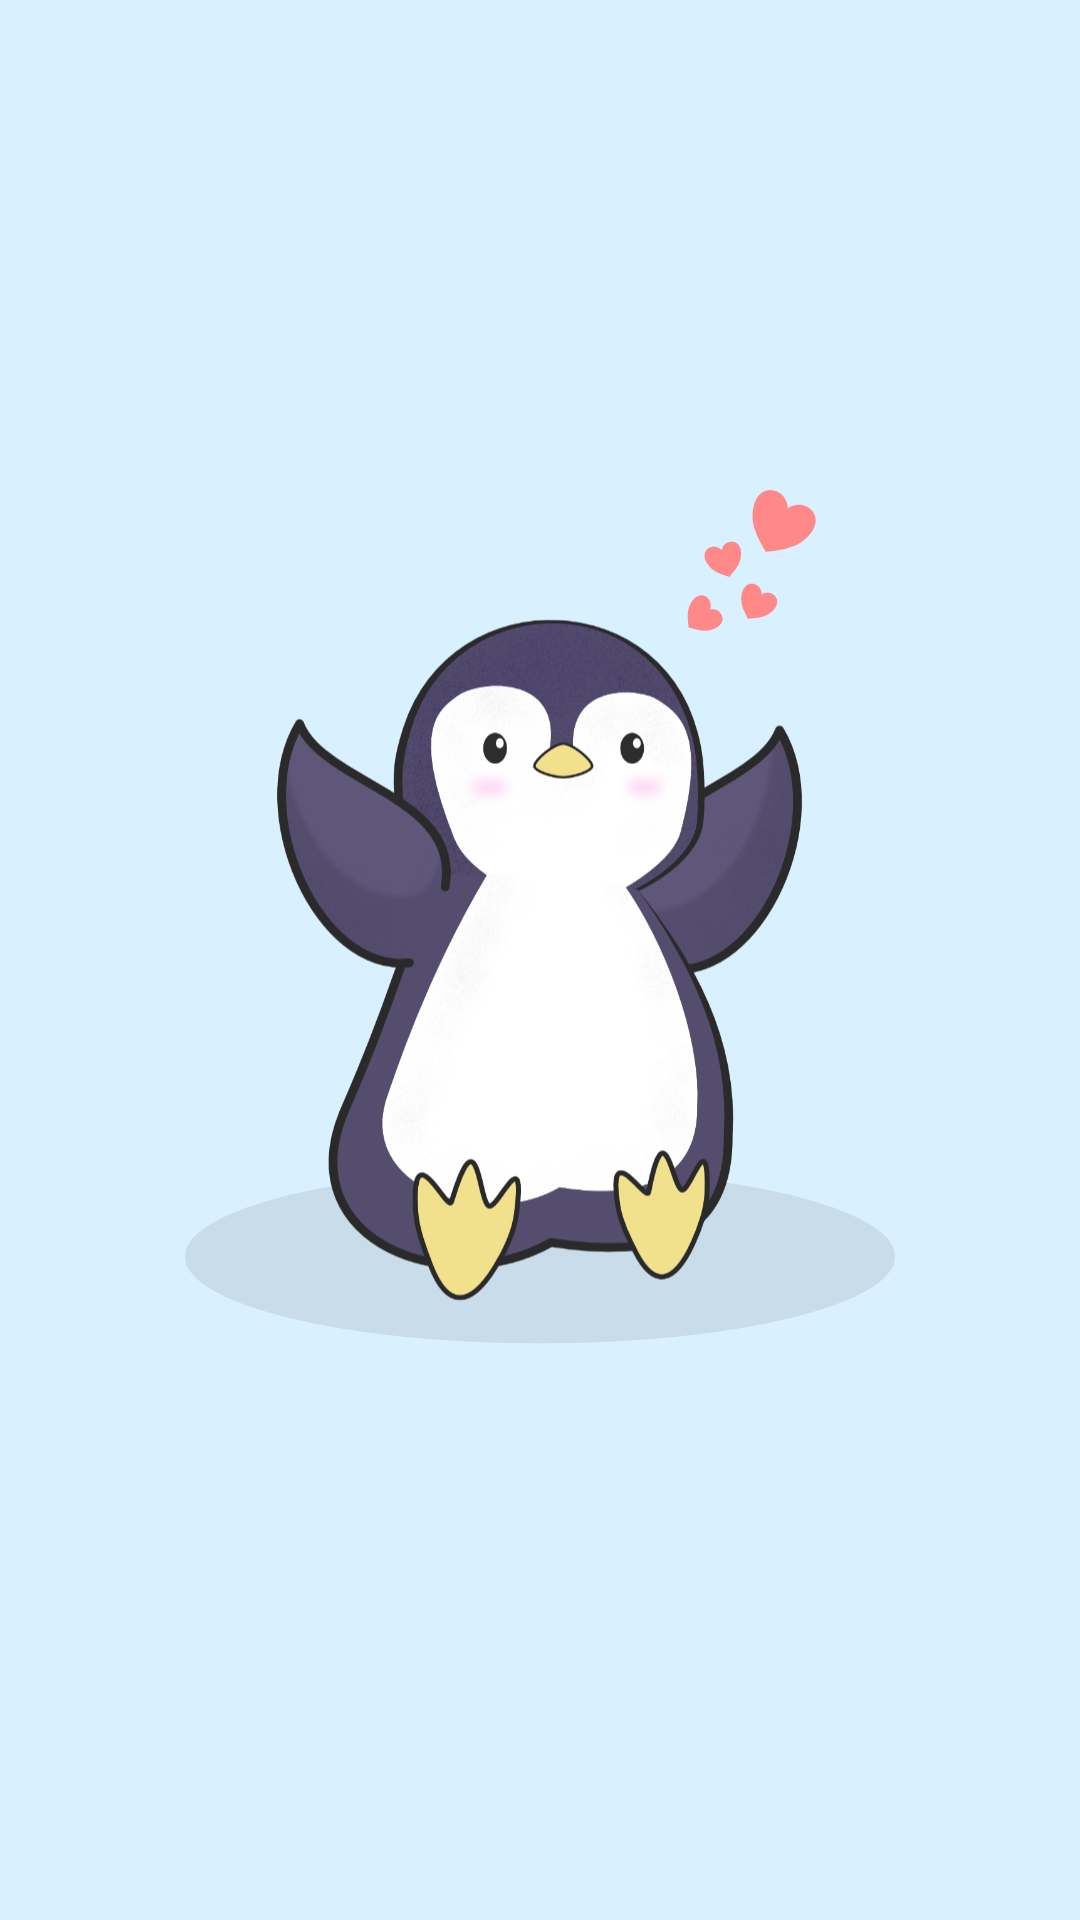 Tổng hợp 118 hình nền chim cánh cụt dễ thương tuyệt vời nhất   thdonghoadian